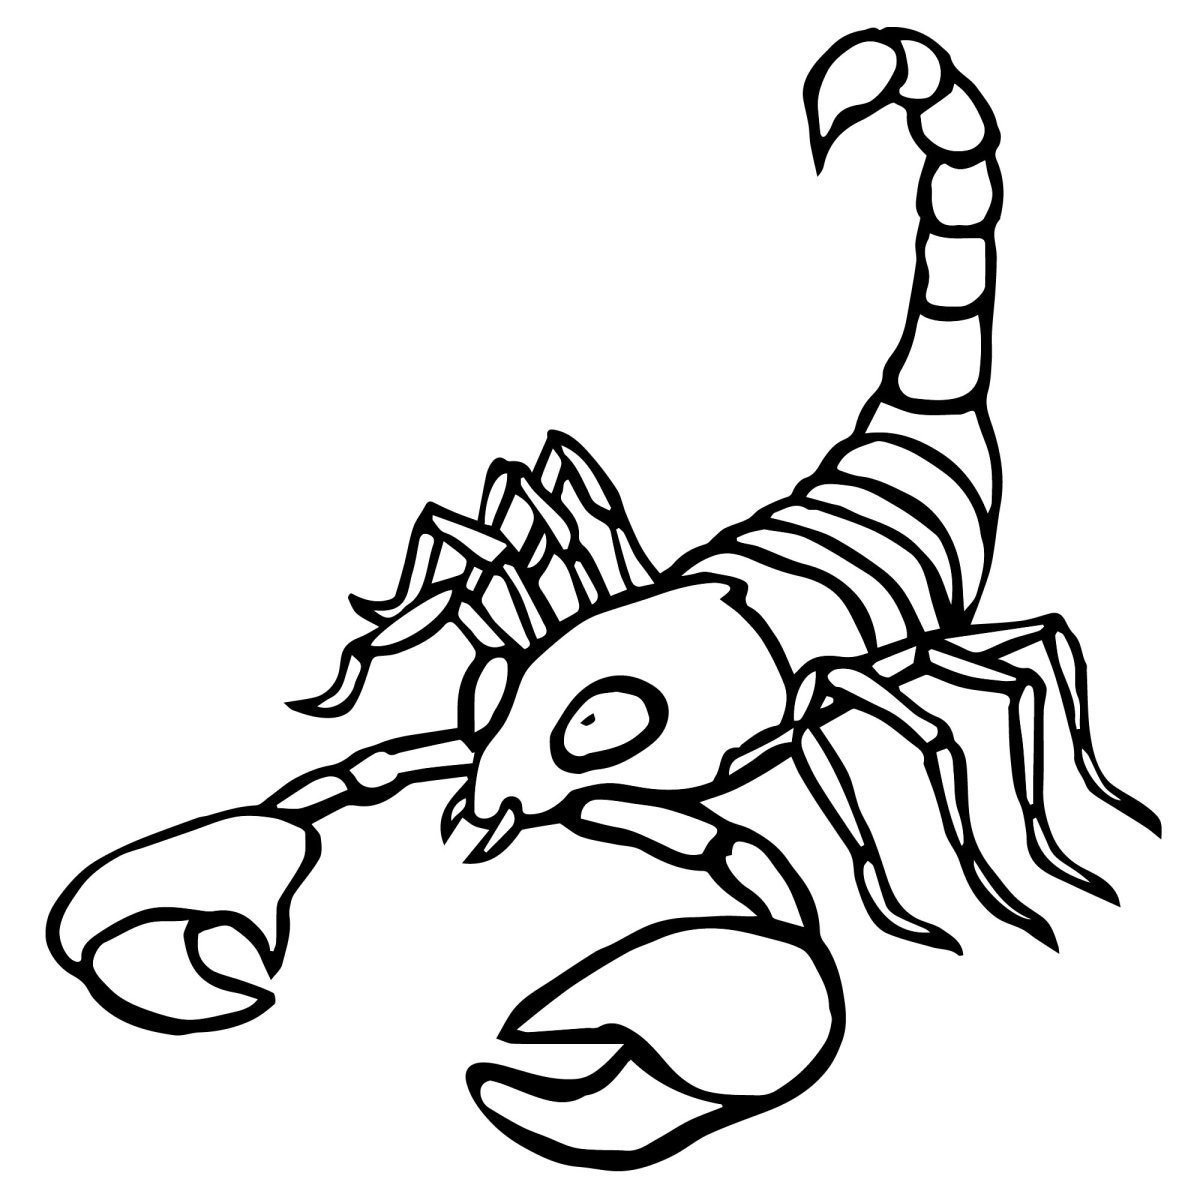 Рисунок скорпиона карандашом для срисовки